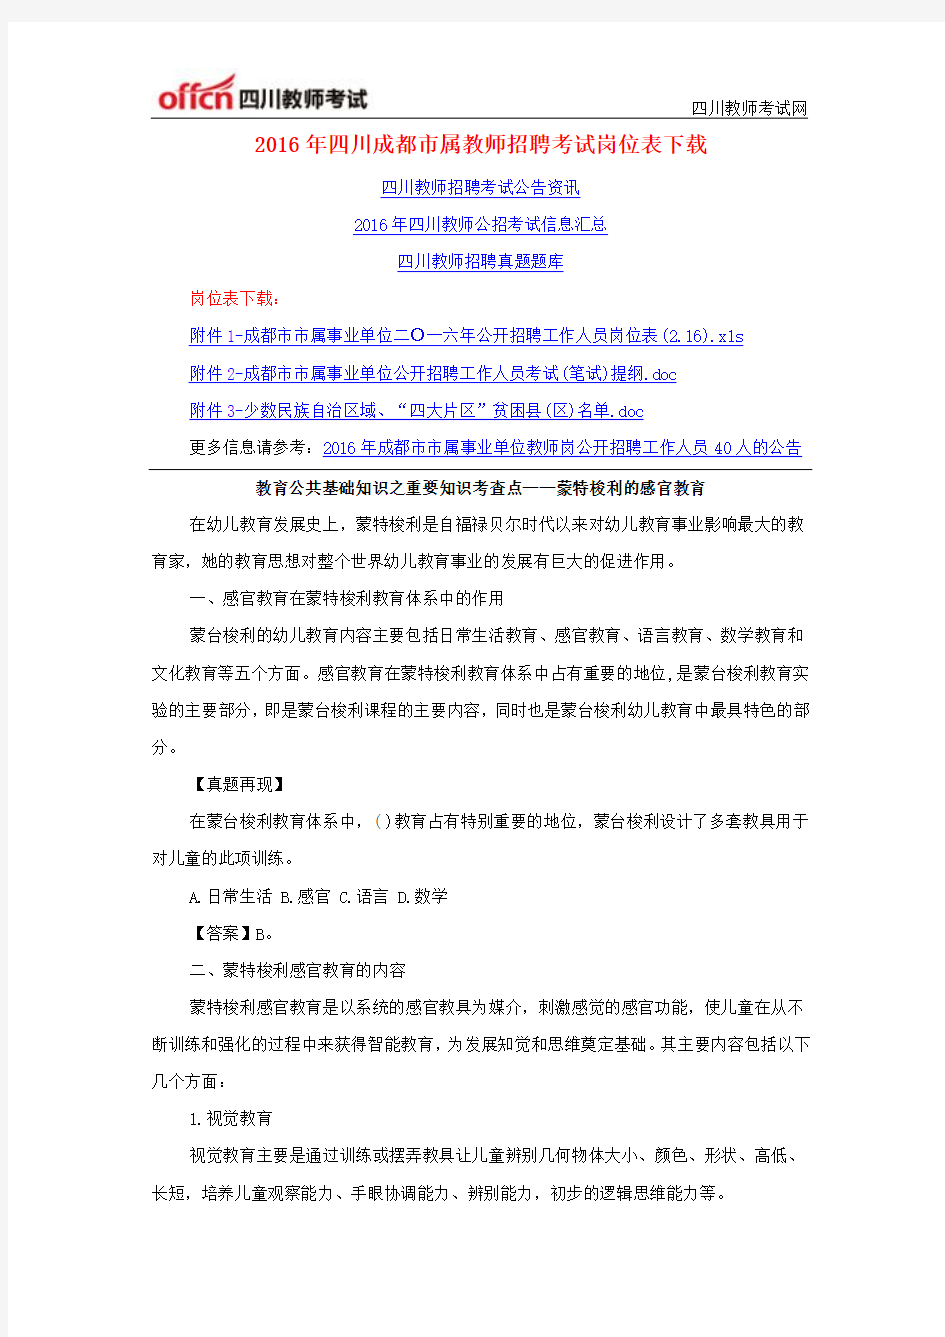 2016年四川成都市属教师招聘考试岗位表下载